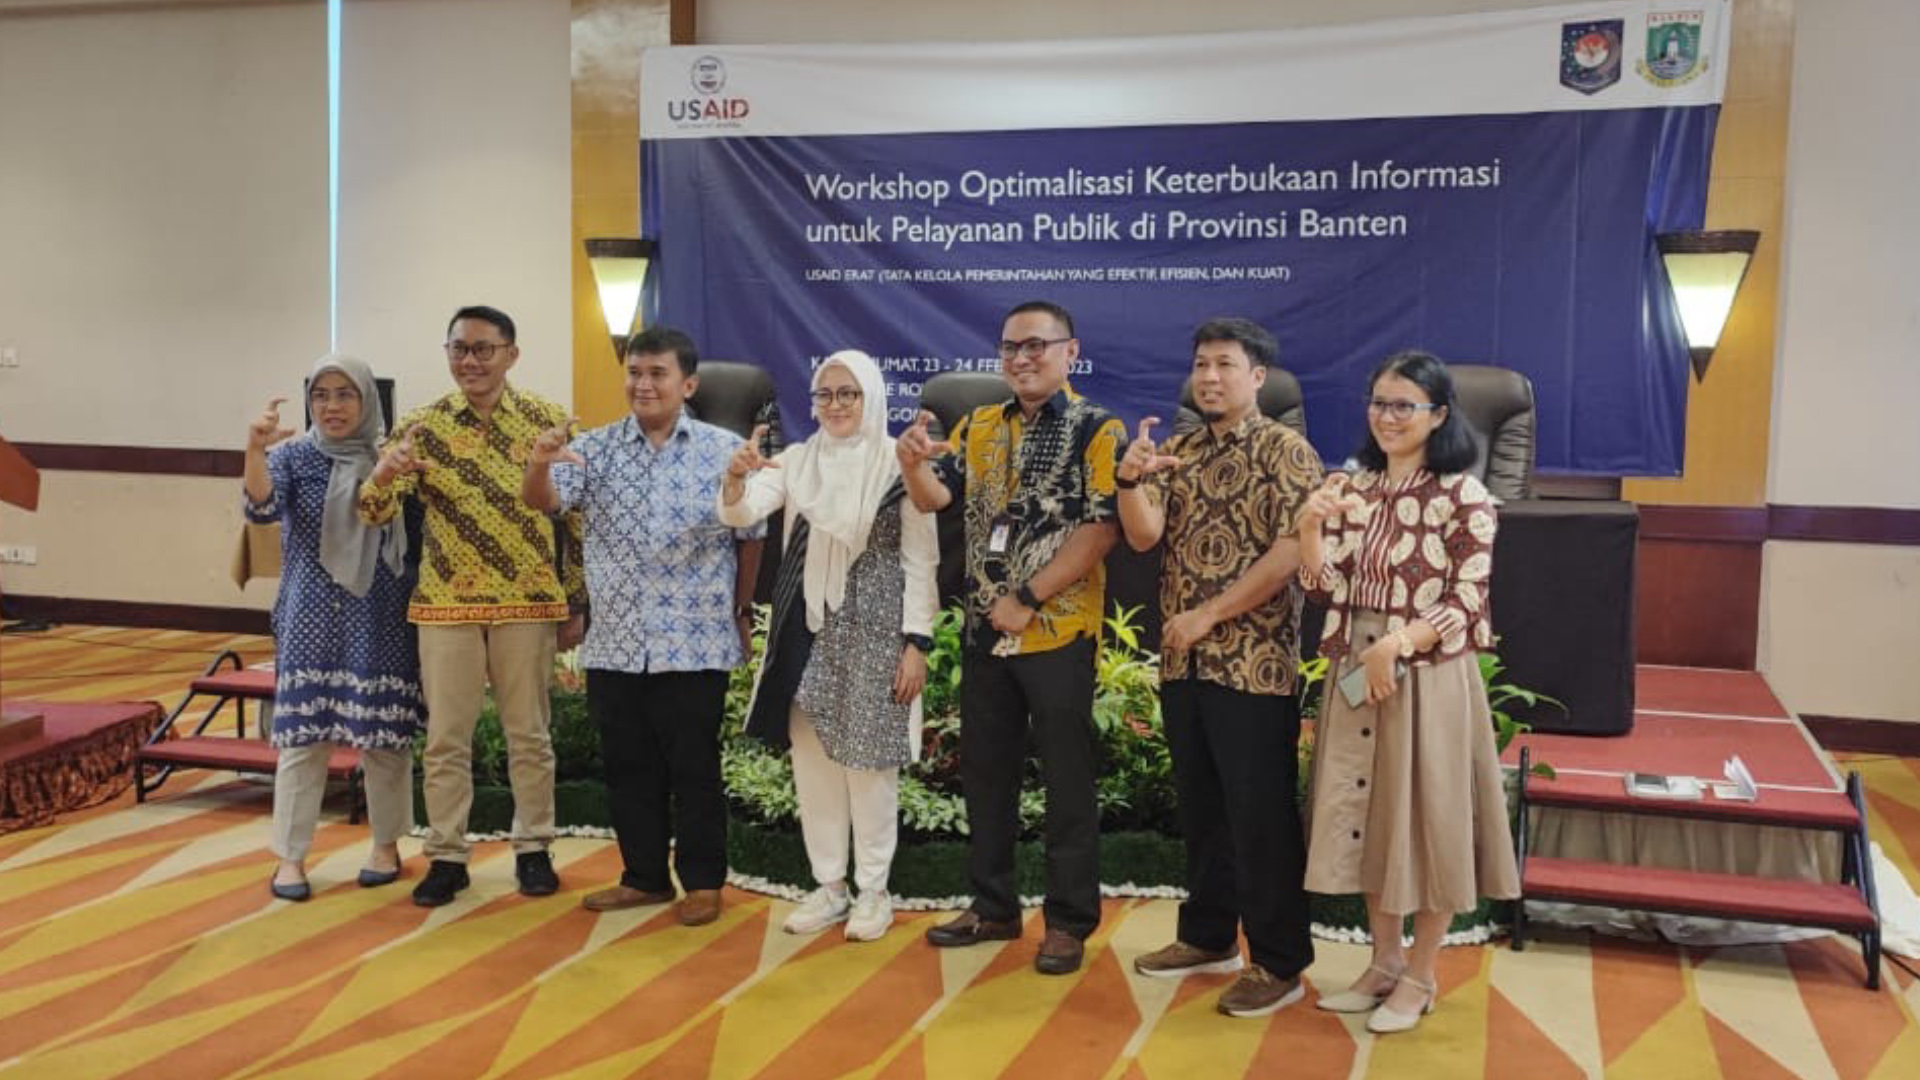 Workshop Optimalisasi Keterbukaan Informasi Untuk Pelayanan Publik Di Provinsi Banten Bersama Usaid Erat